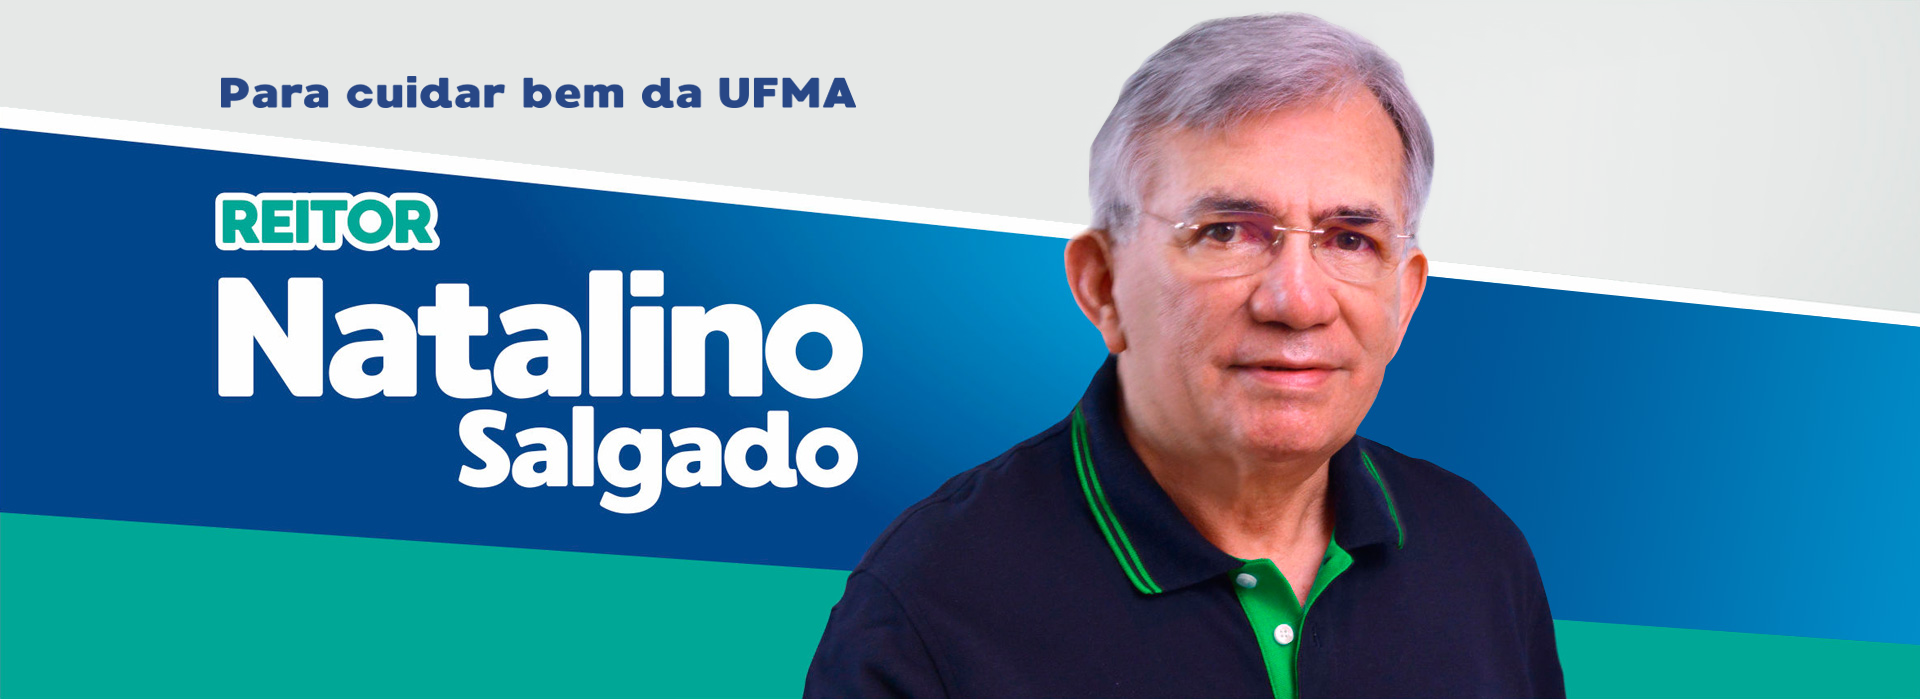 Natalino Salgado é o mais votado entre candidatos a reitor com 49,49%